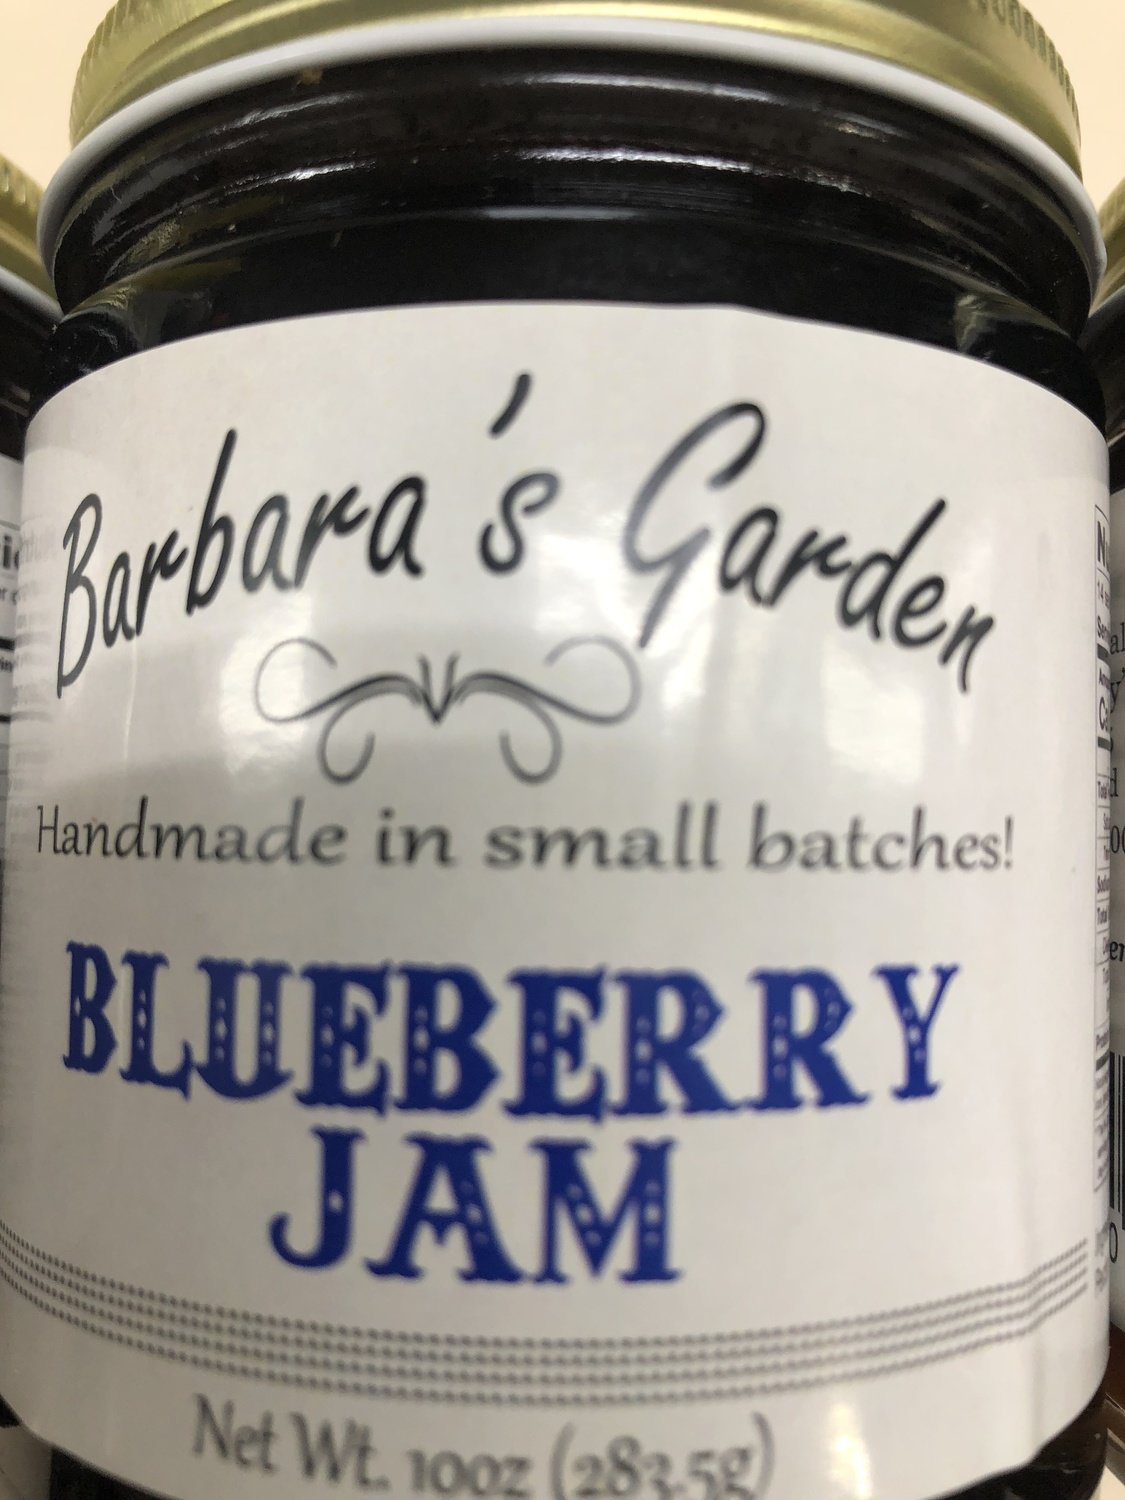 Barbara's Garden Blueberry Jam 10 oz